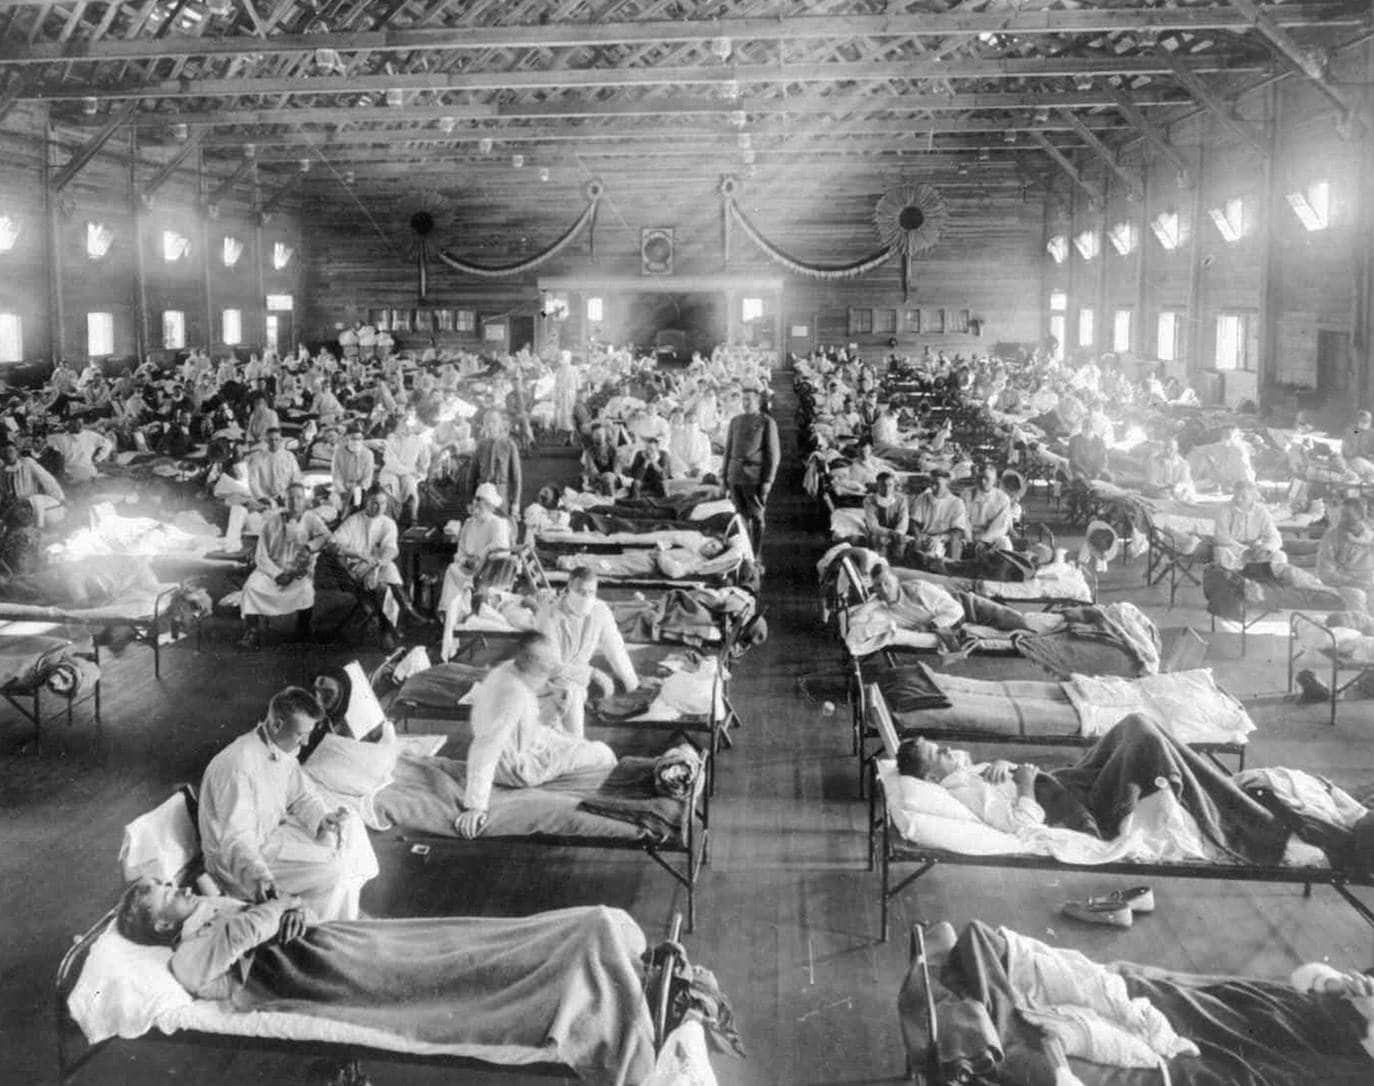 Las fotos de hospitales de campaña con camas ordenadas y médicos y enfermeras atendiendo «solícitamente» a los soldados enfermos fueron pura propaganda, según el historiador Anton Erkoreka. La realidad fue mucho más cruel./Otis Historical Archives